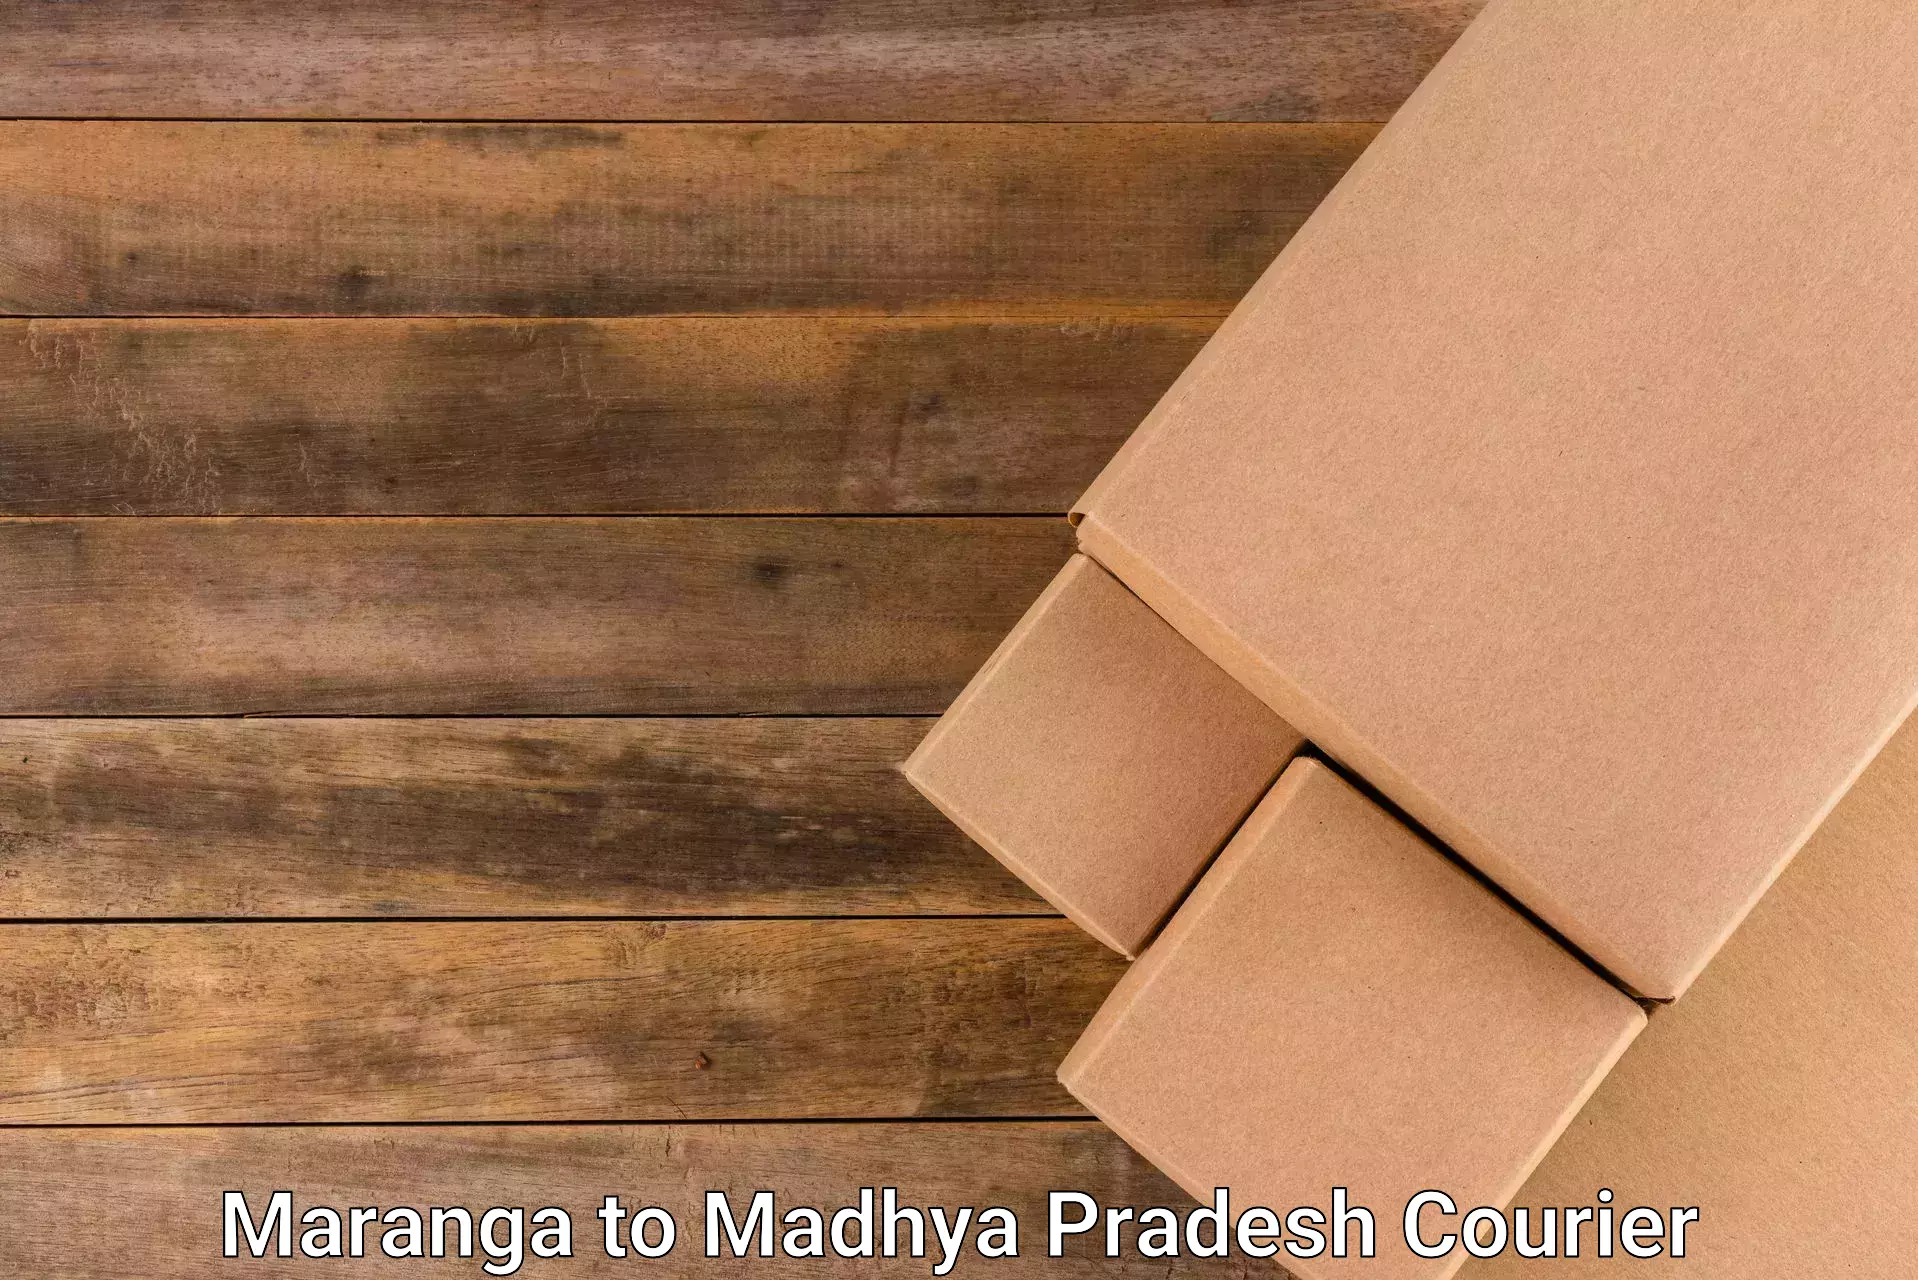 Multi-package shipping Maranga to Madhya Pradesh